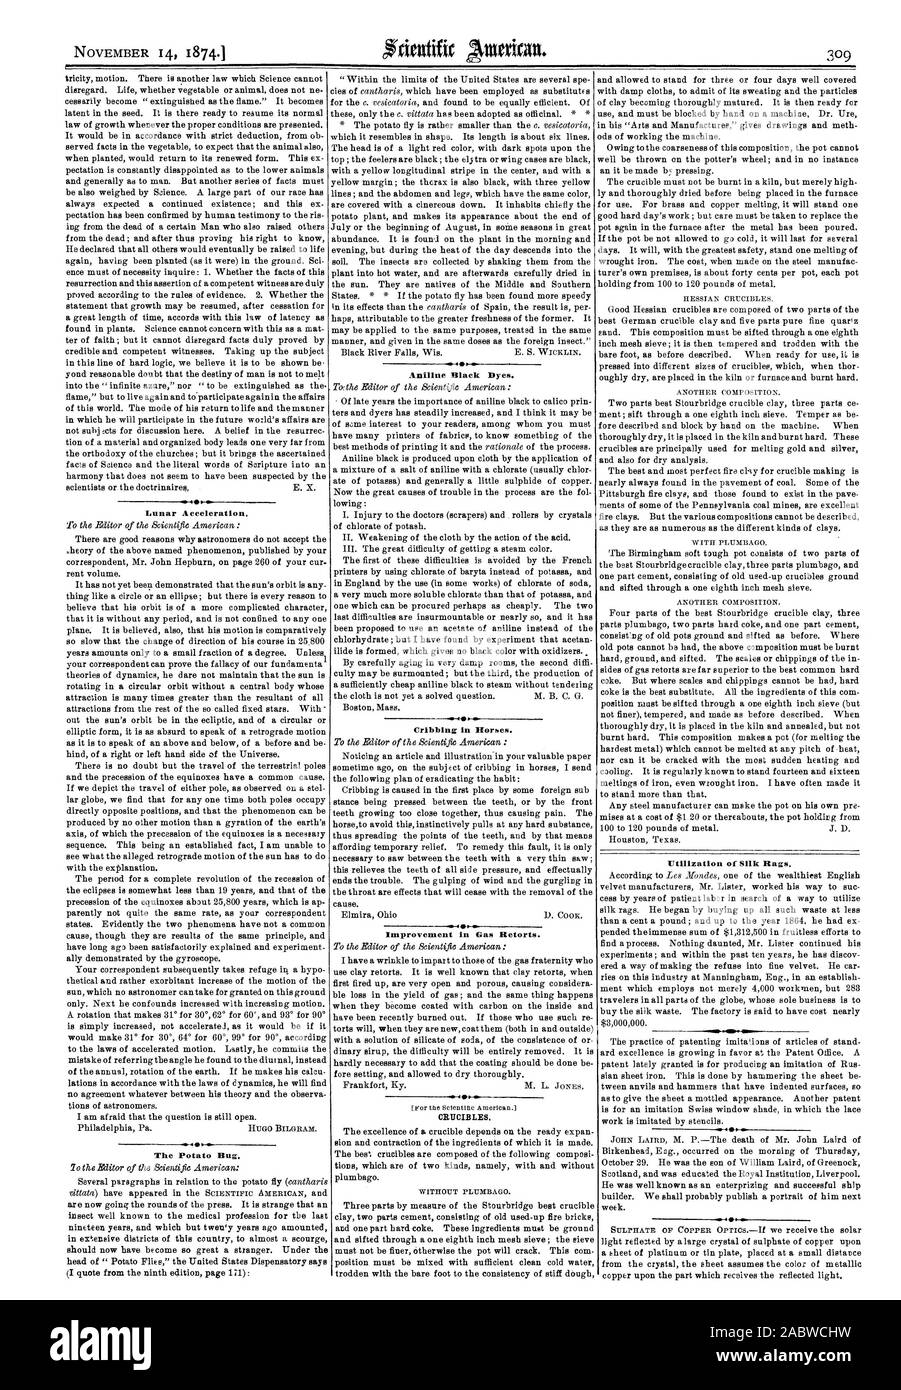 Accelerazione lunare. Il Bug di patate. Anilina coloranti neri. La puntellatura in cavalli. Miglioramento del Gas storte. Crogioli., Scientific American, 1874-11-14 Foto Stock